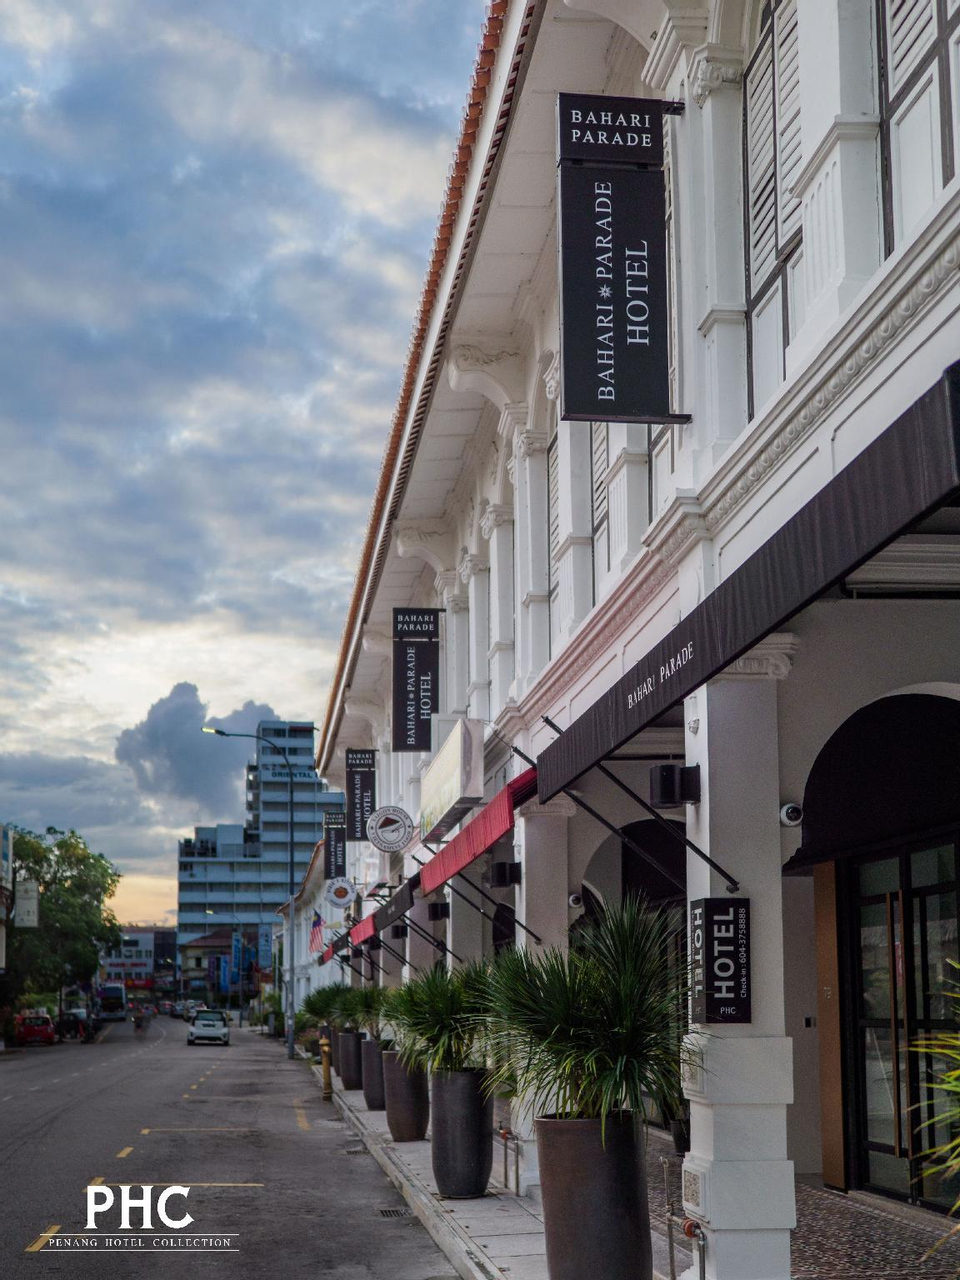 Exterior & Views 1, Bahari Parade Hotel By PHC, Pulau Penang